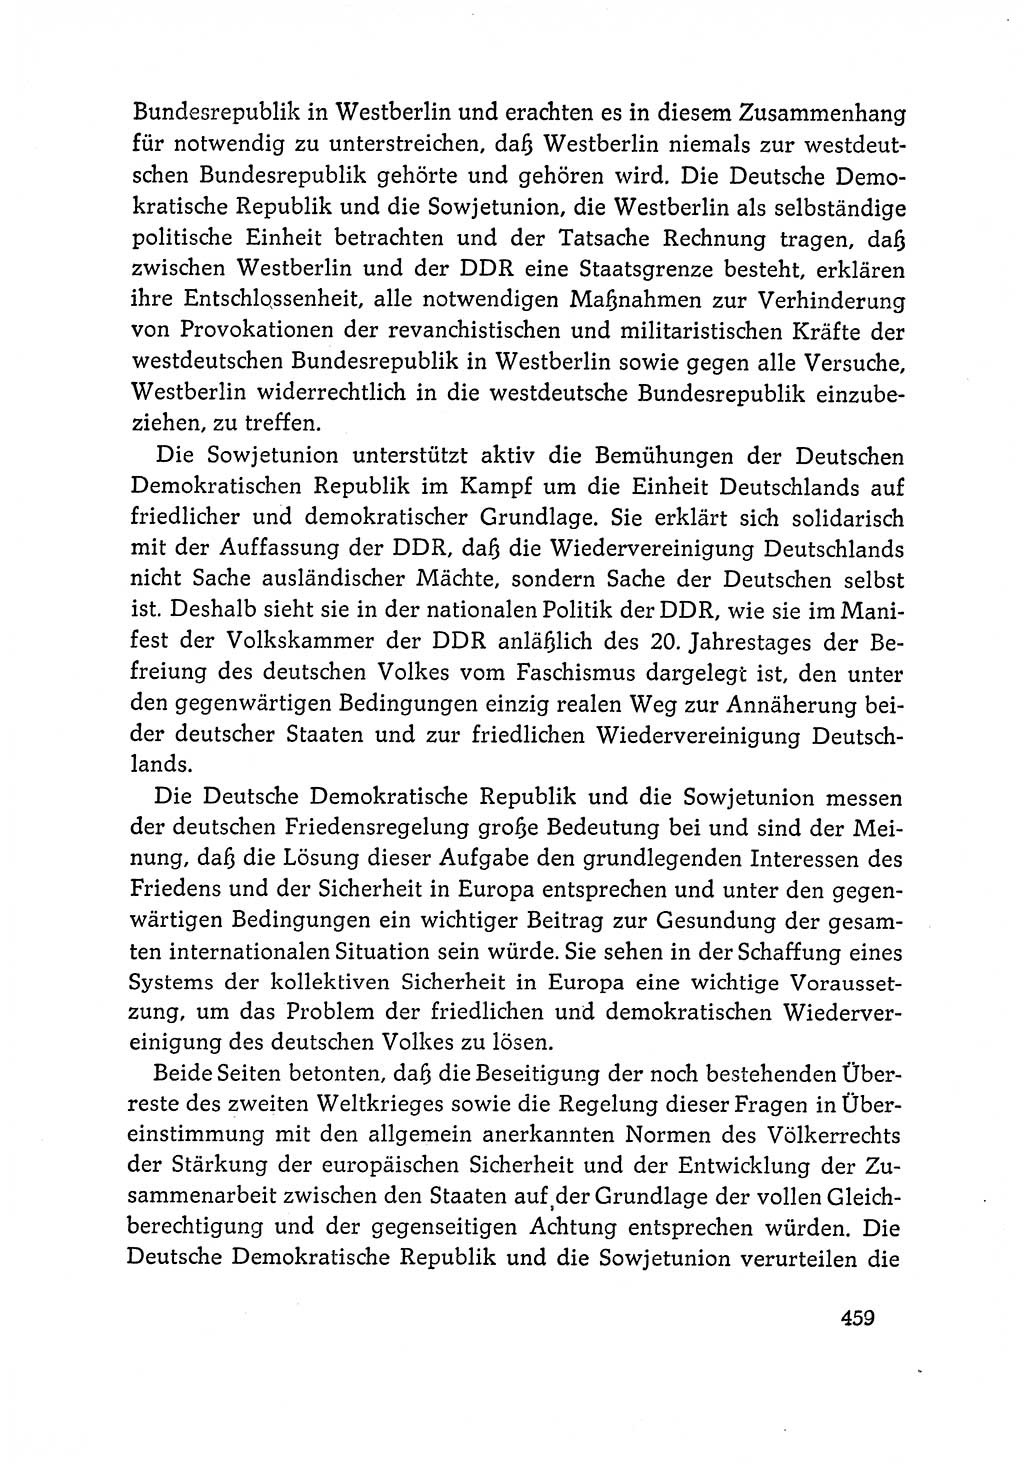 Dokumente der Sozialistischen Einheitspartei Deutschlands (SED) [Deutsche Demokratische Republik (DDR)] 1964-1965, Seite 459 (Dok. SED DDR 1964-1965, S. 459)